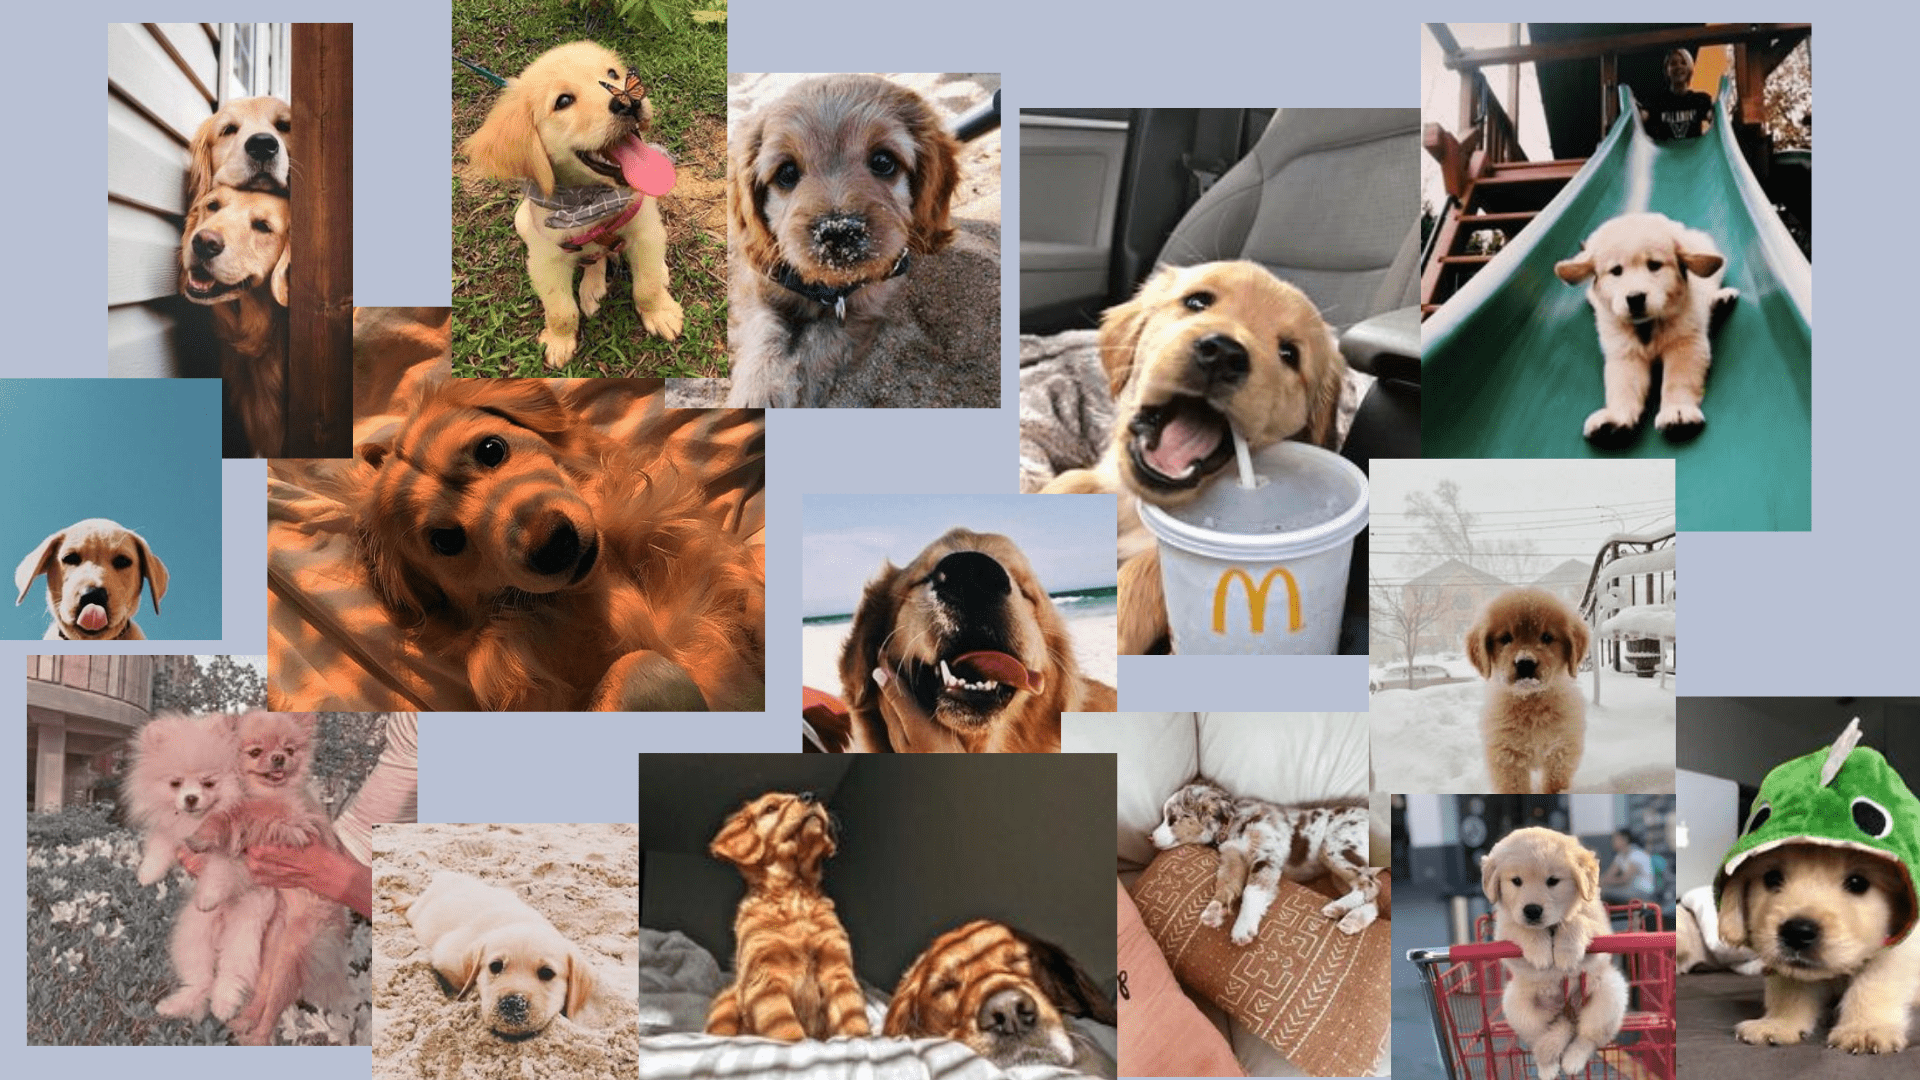 p u p p i e s. Dog wallpaper, Puppy wallpaper, Cute laptop wallpaper